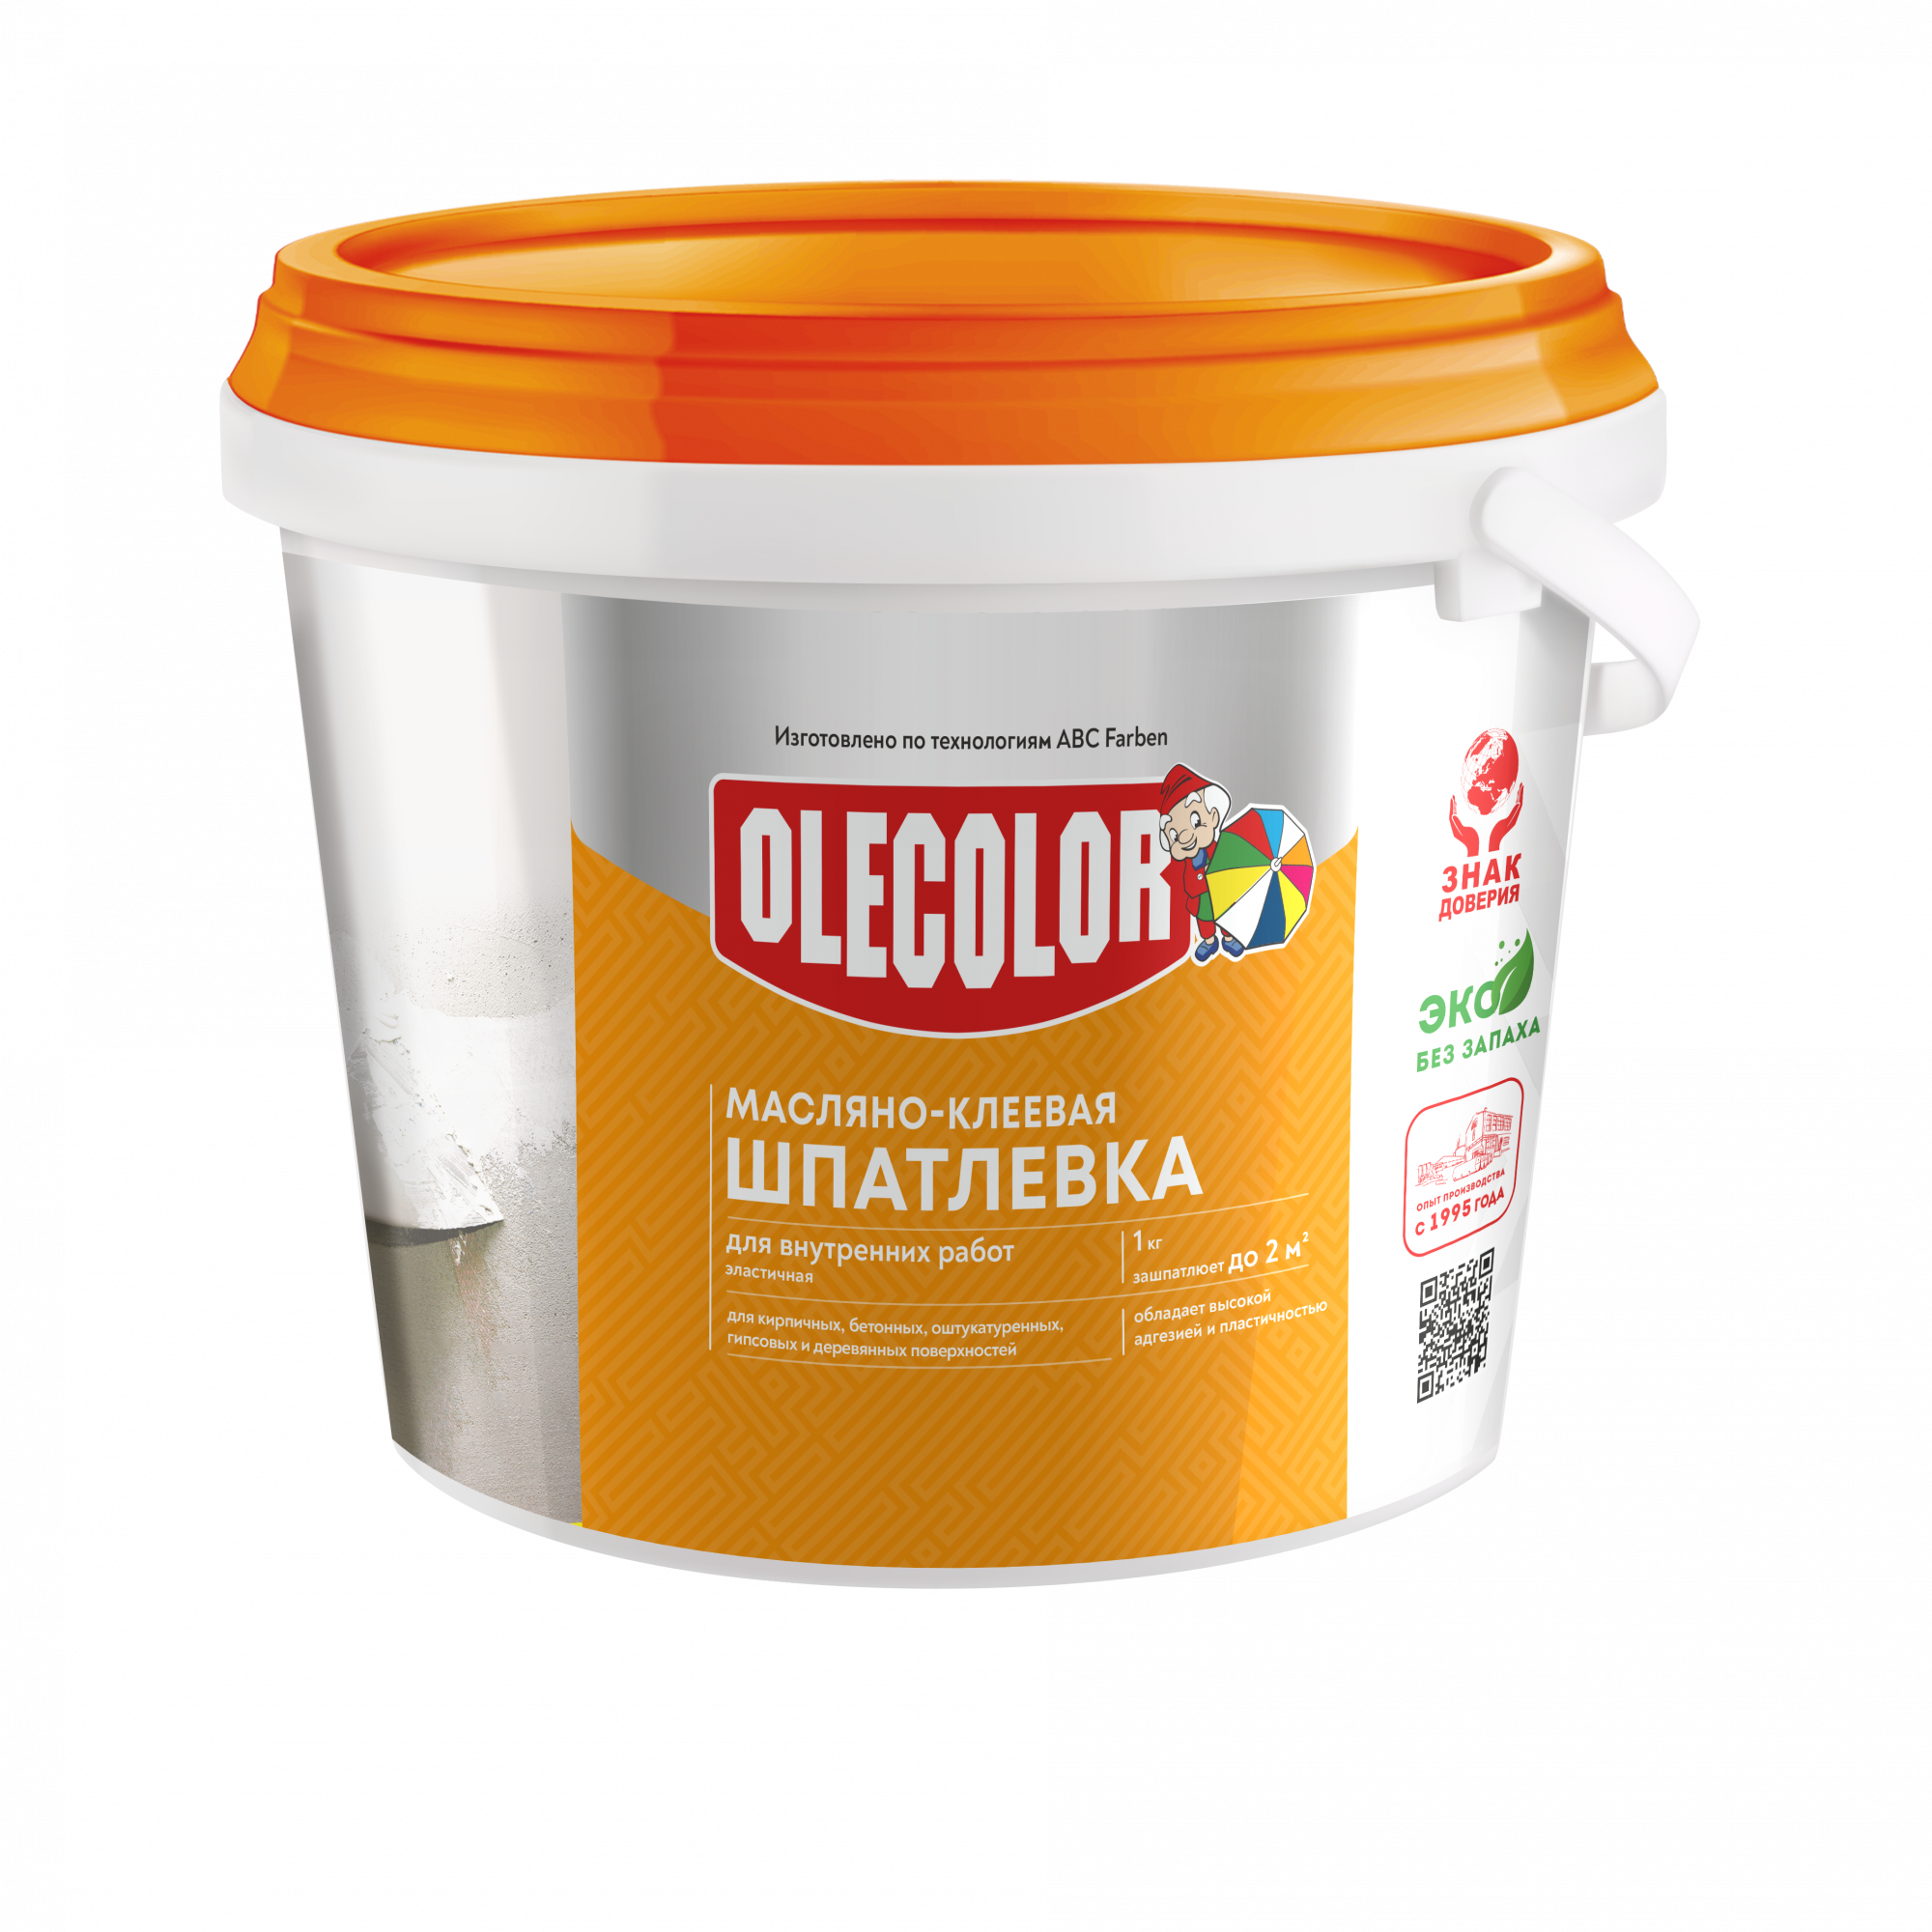 Шпатлевка масляно-клеевая для внутренних работ Olecolor 1,8 кг